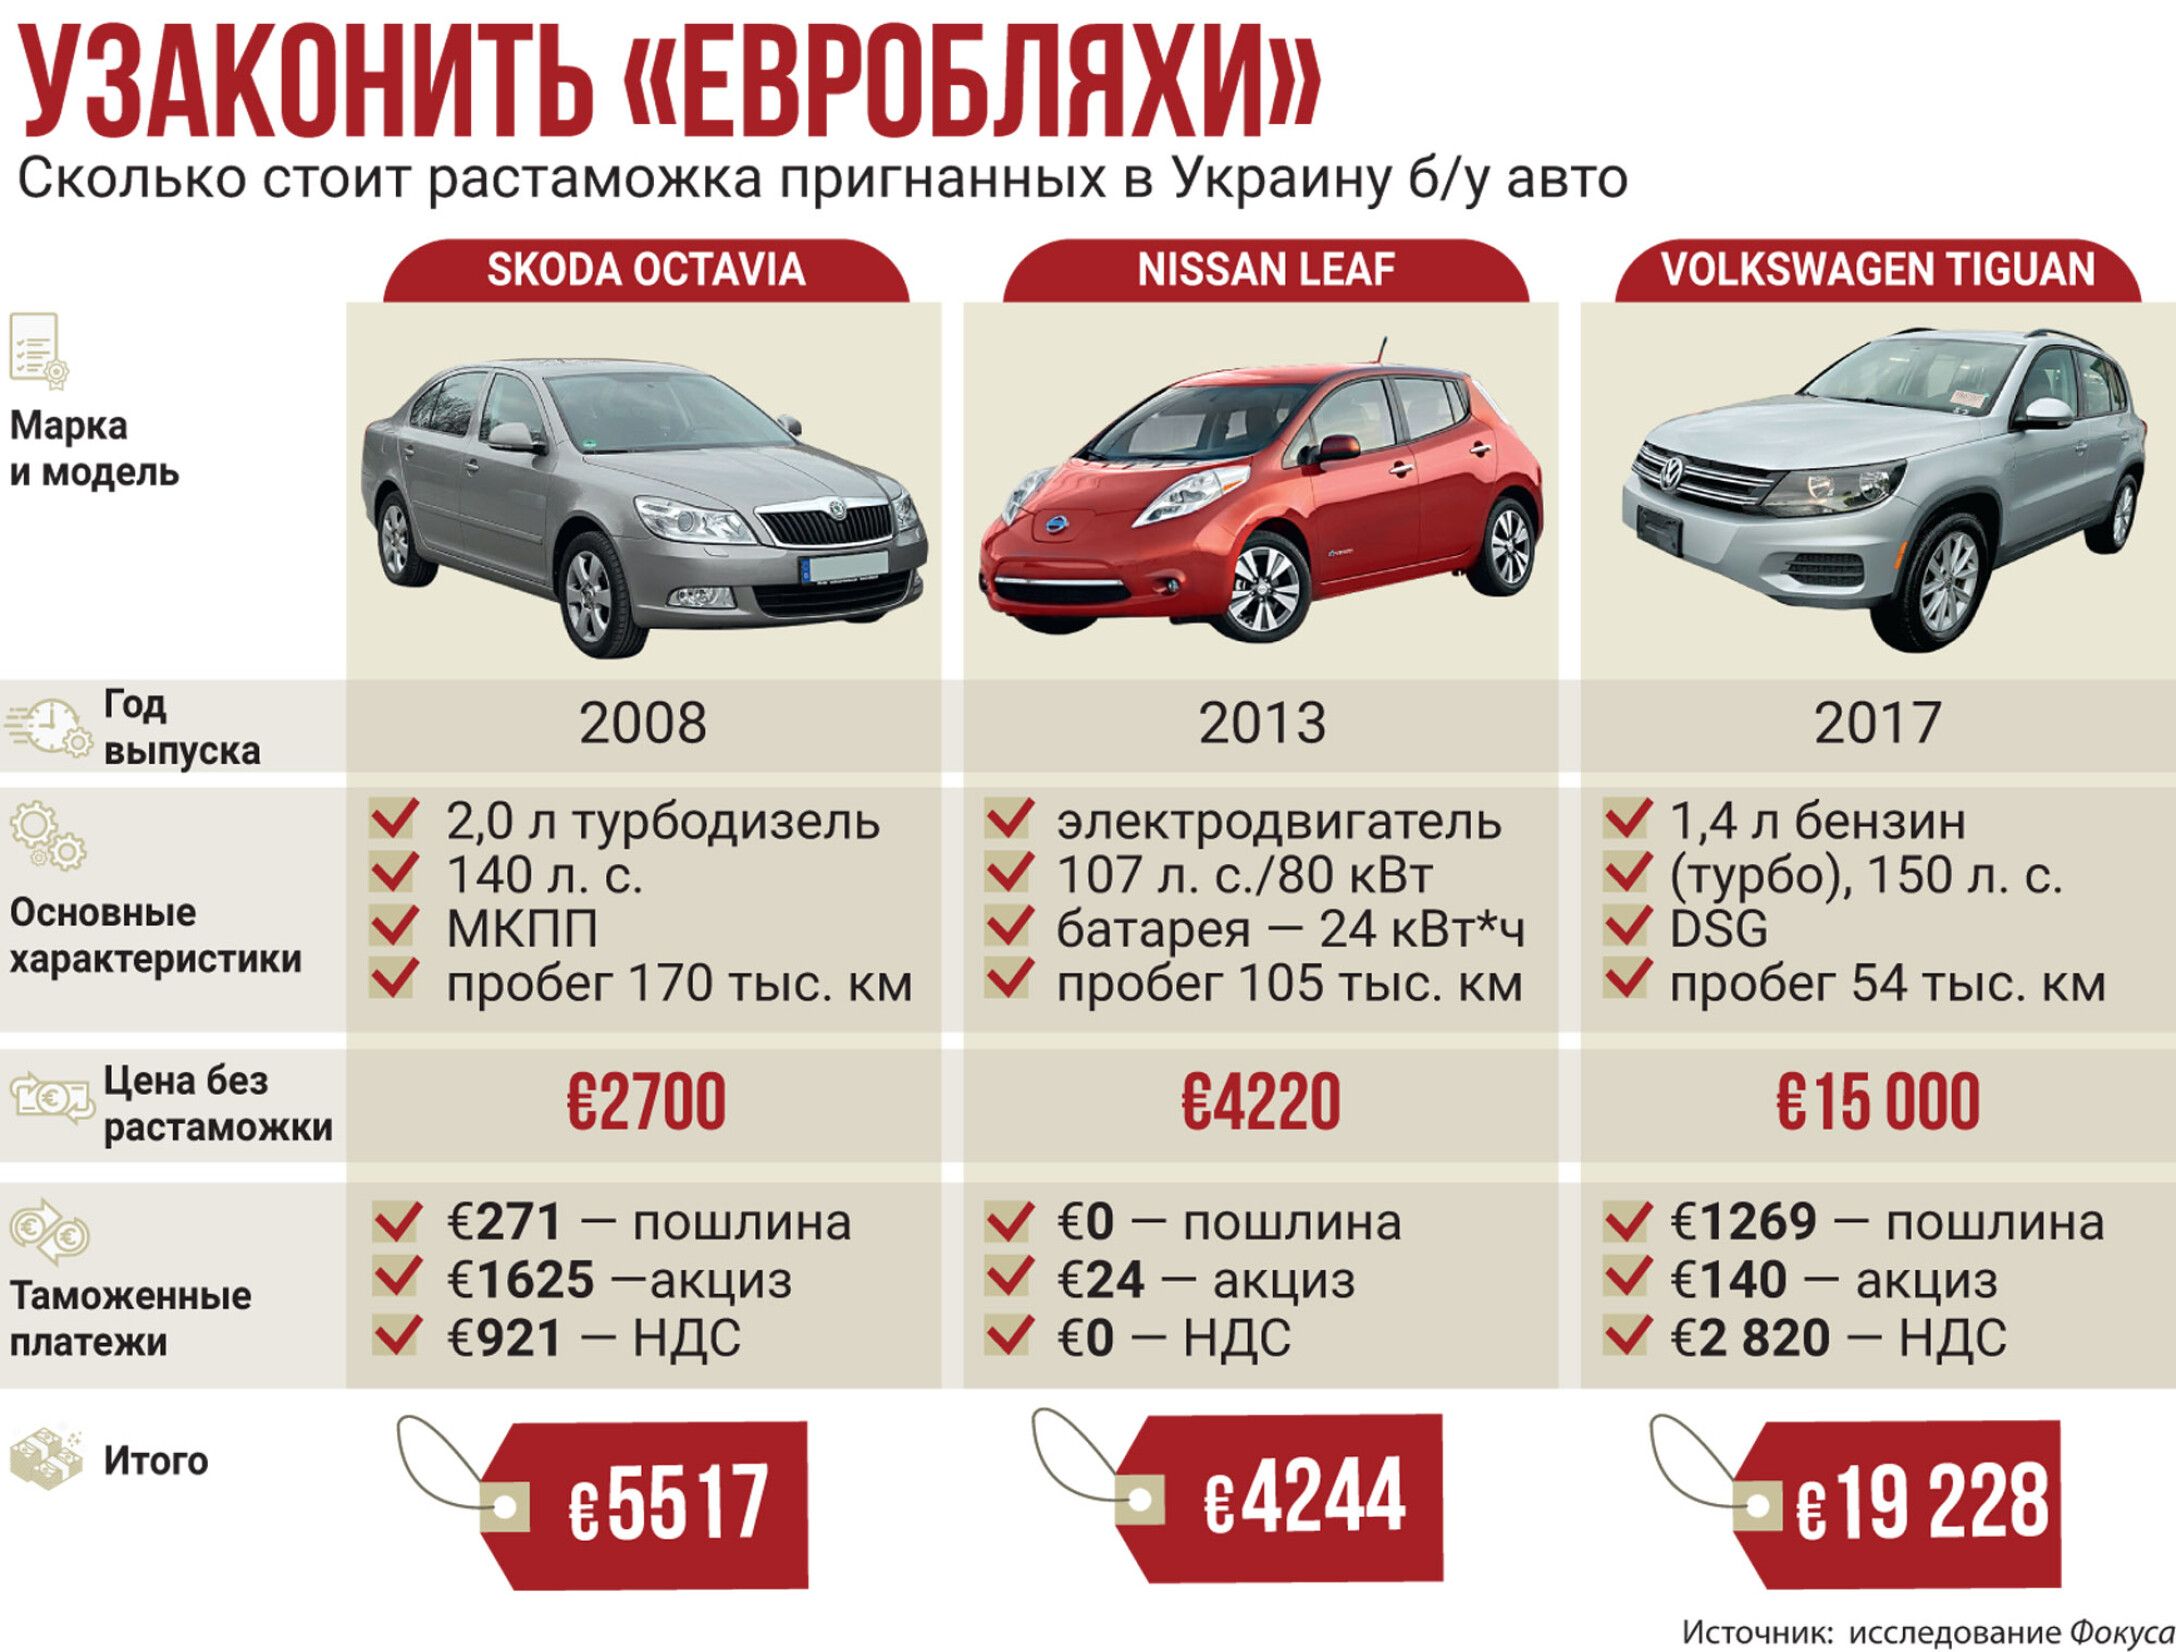 Как растаможить автомобиль в россии в 2021 году: правила и порядок